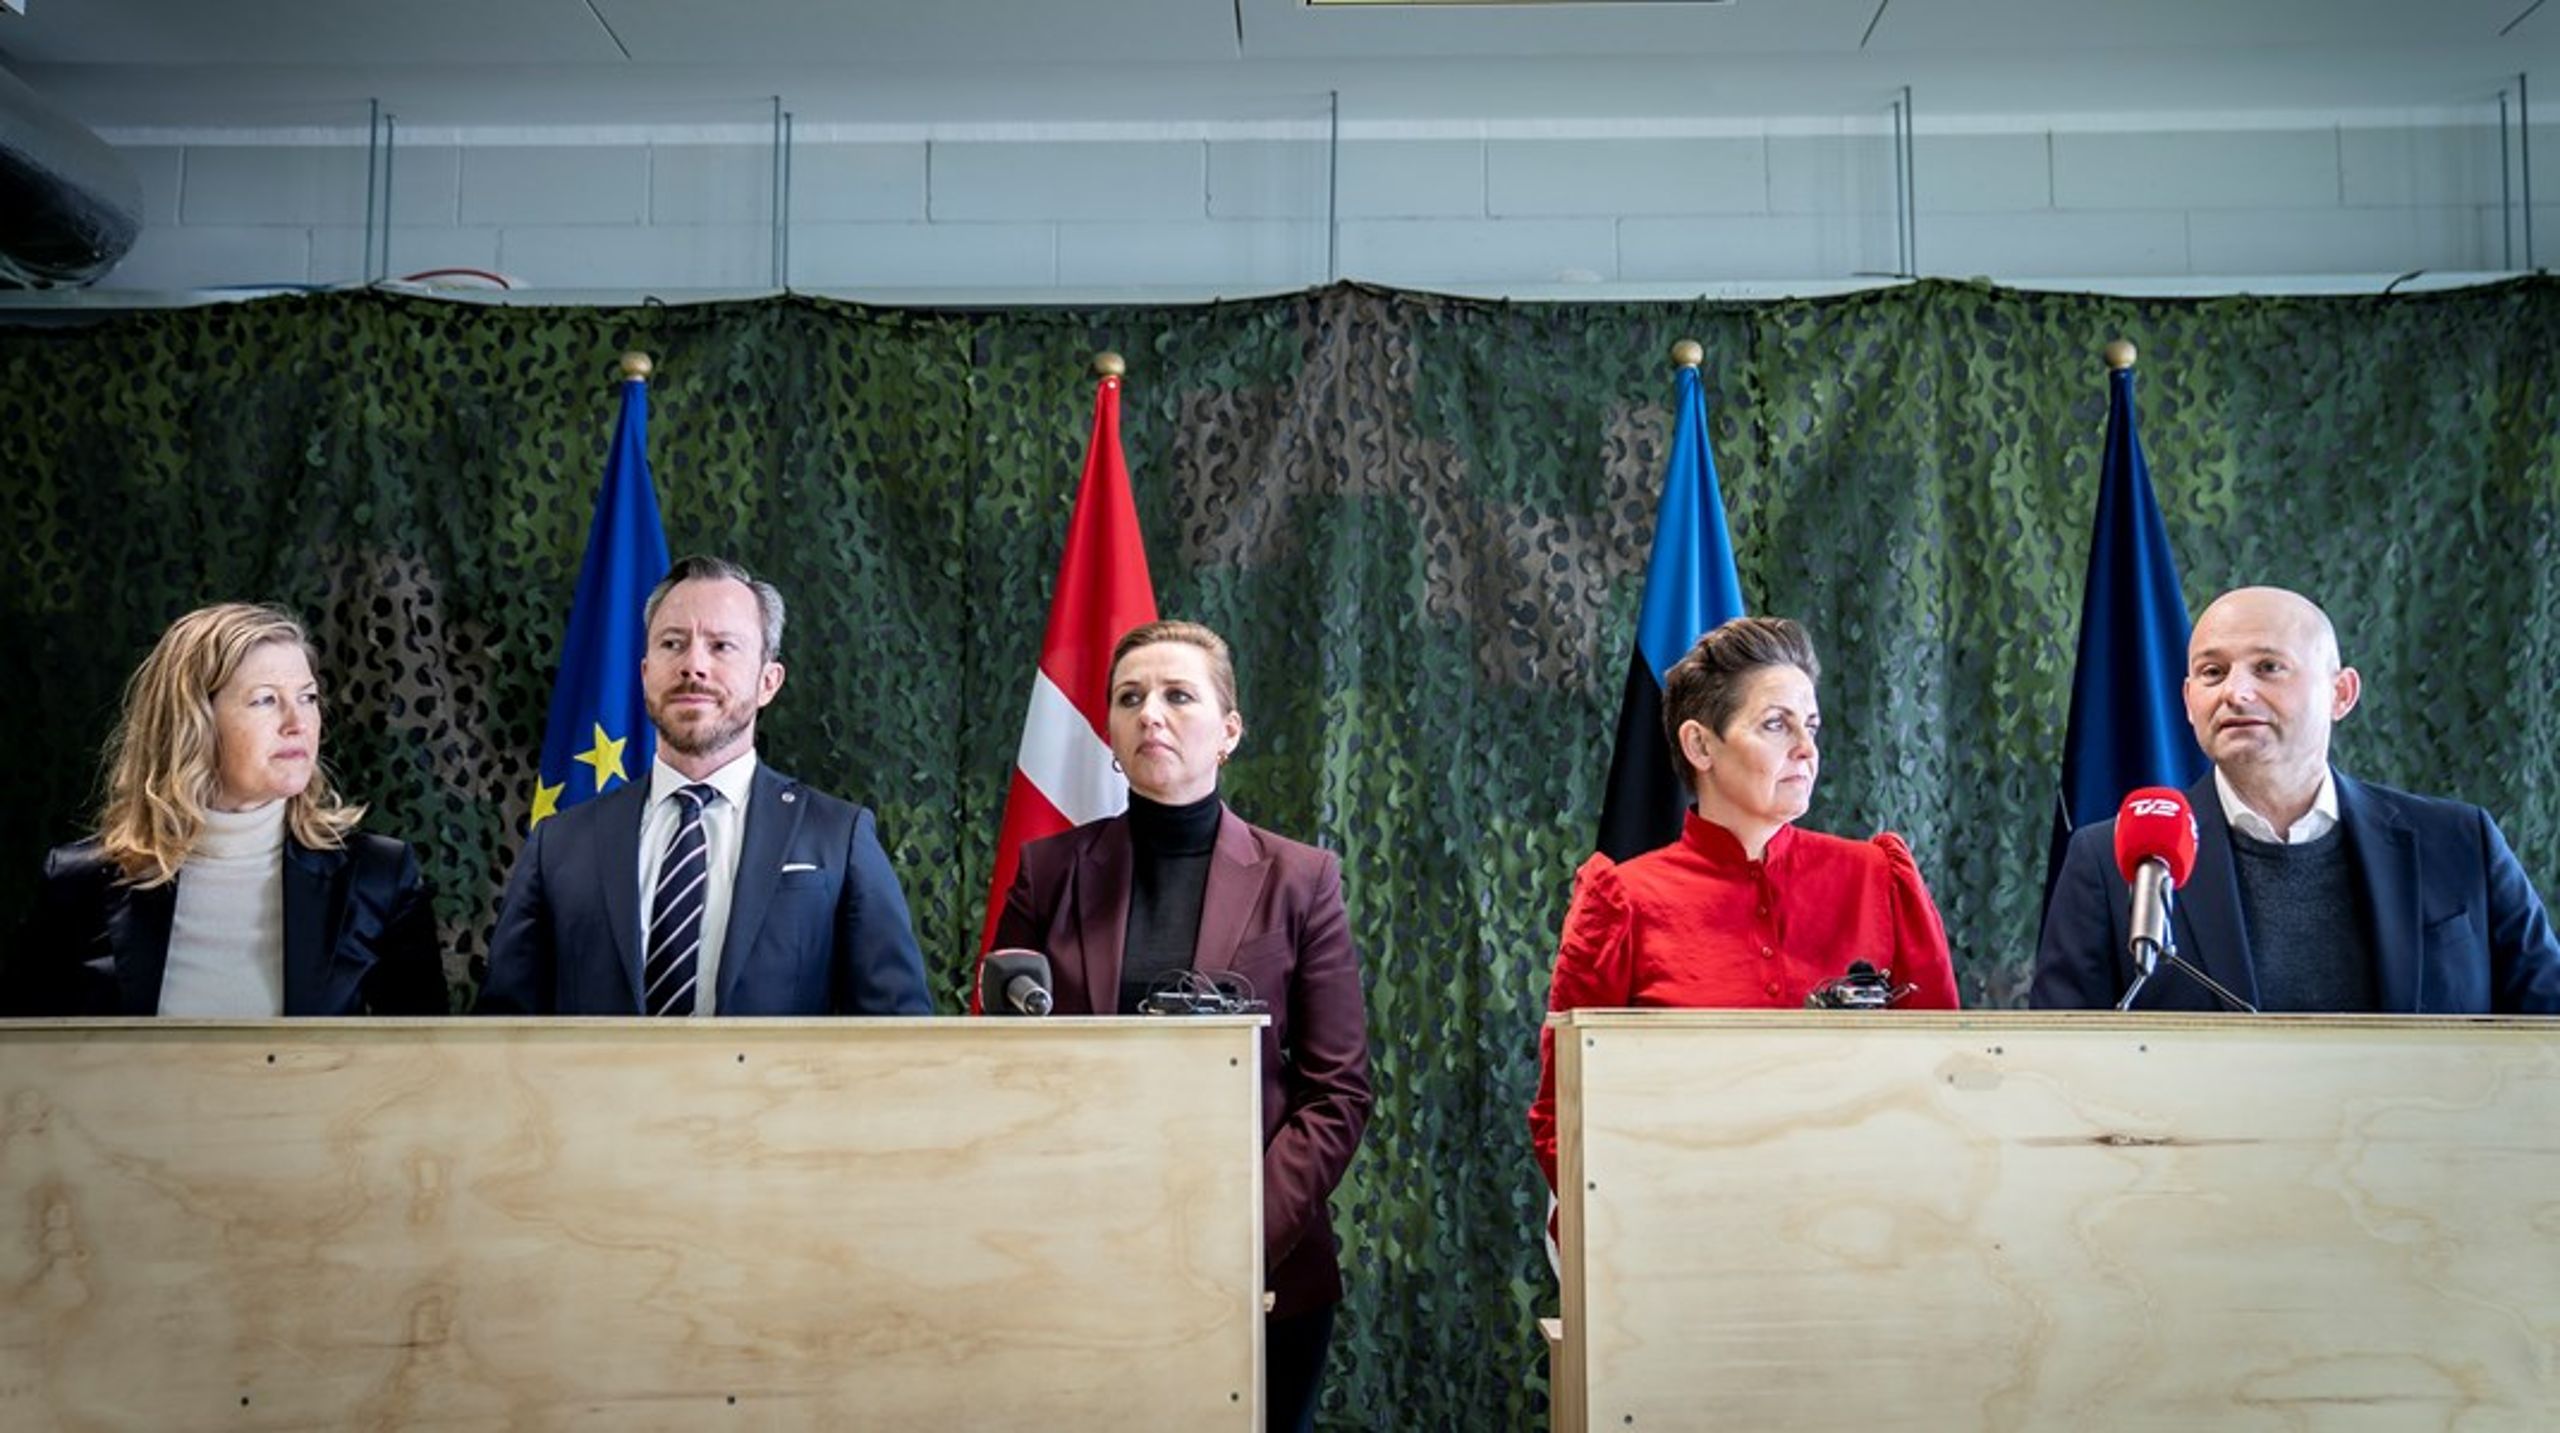 Afstemningen om det danske forsvarsforbehold giver anledning til, at vi kan tage en vigtig demokratisk debat om dansk udenrigs- og sikkerhedspolitik, skriver Jakob Dreyer.